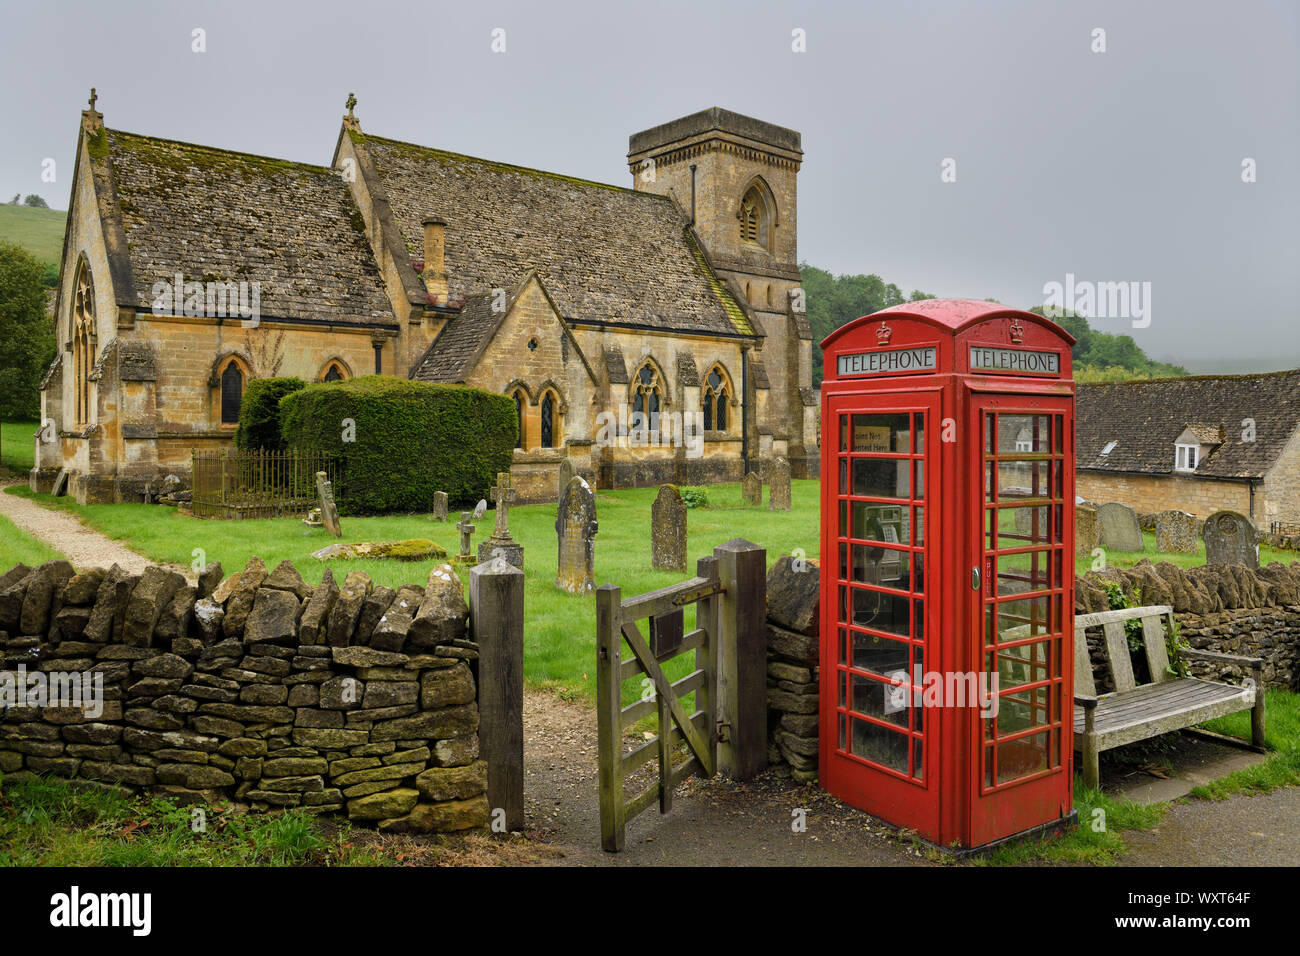 Cabine téléphonique rouge au 15e siècle l'église anglicane St Barnabas cimetière avec mur de pierre et la porte en temps de pluie humide en Angleterre Cotswold Snowshill Banque D'Images